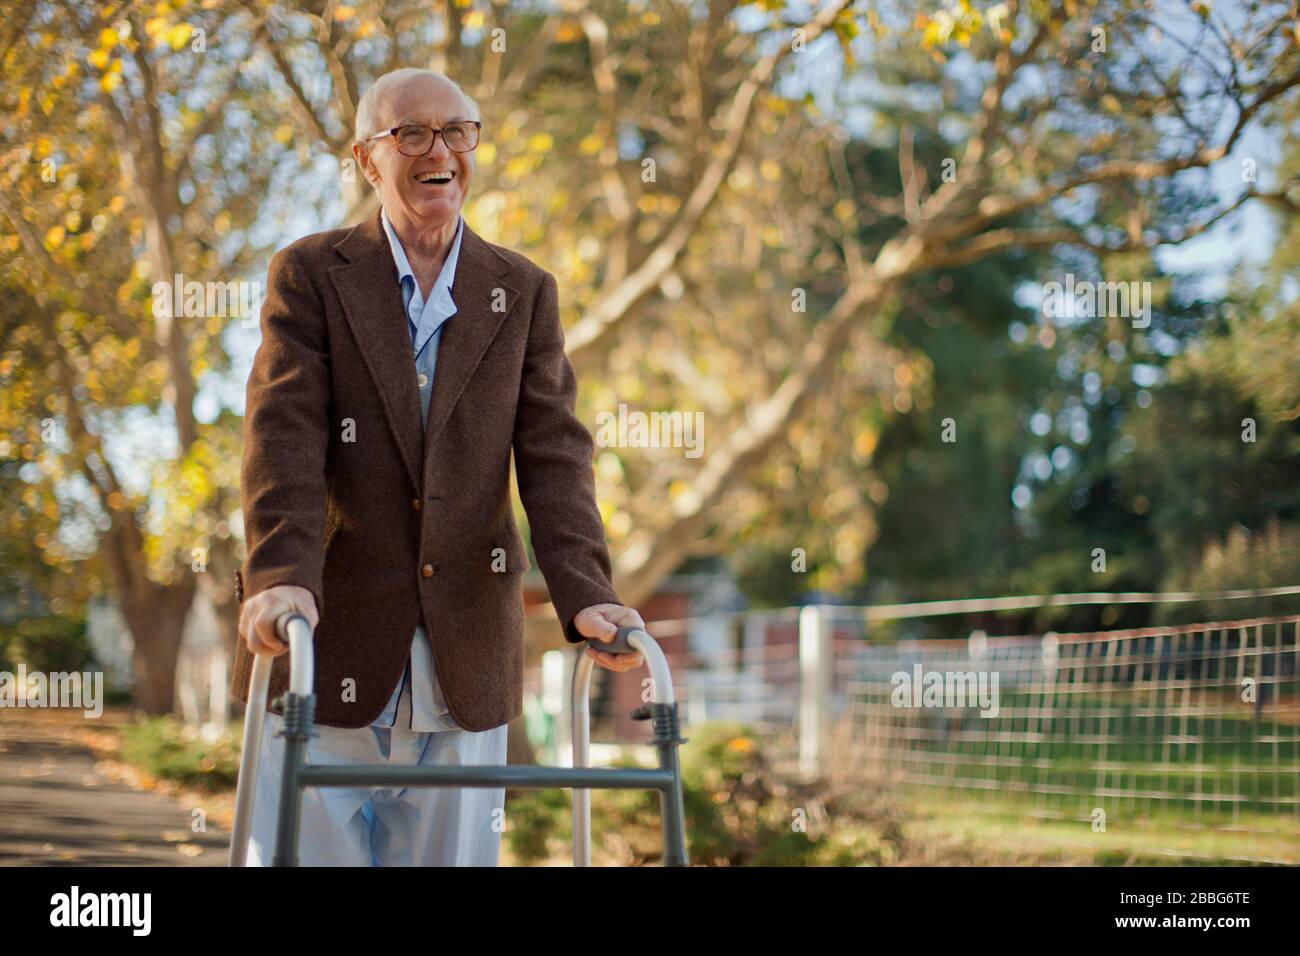 Laughing senior man having fun walking through a park with a walking frame. Stock Photo